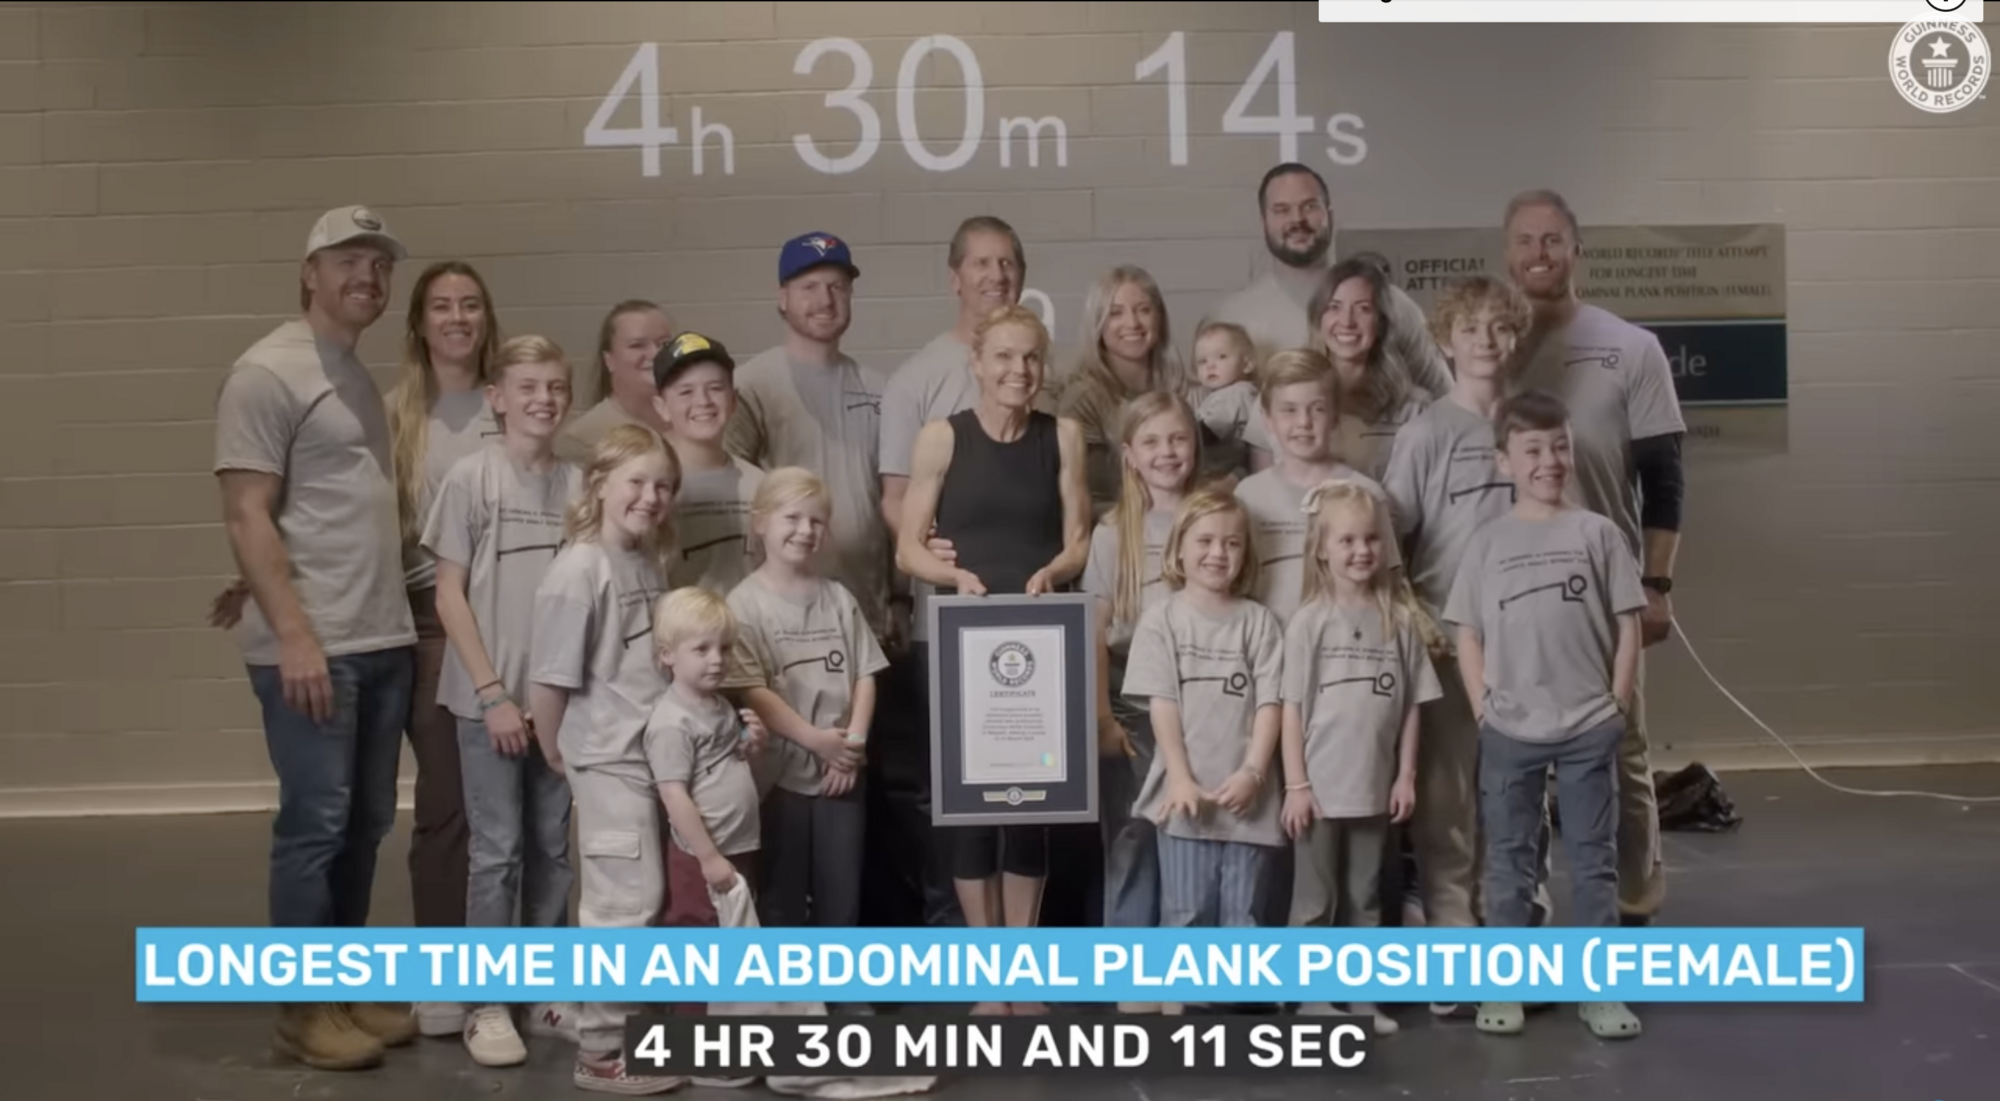 58-летняя учительница из Канады простояла в планке более 4 часов и побила мировой рекорд. Фото и видео